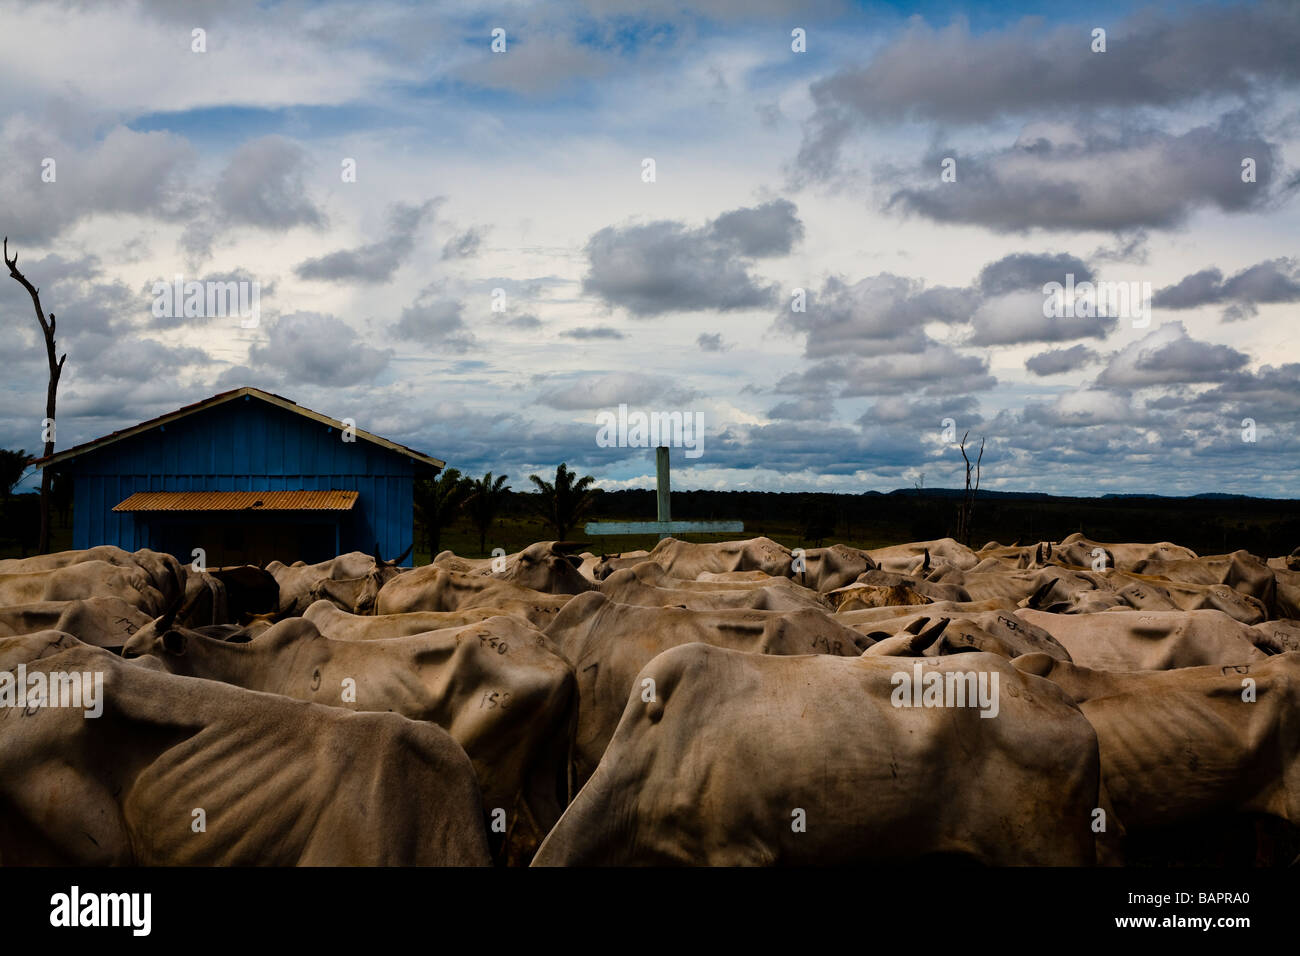 Herde von Rindern BR 163 Straße im Süden Para Staat Amazonas Brasilien Stockfoto